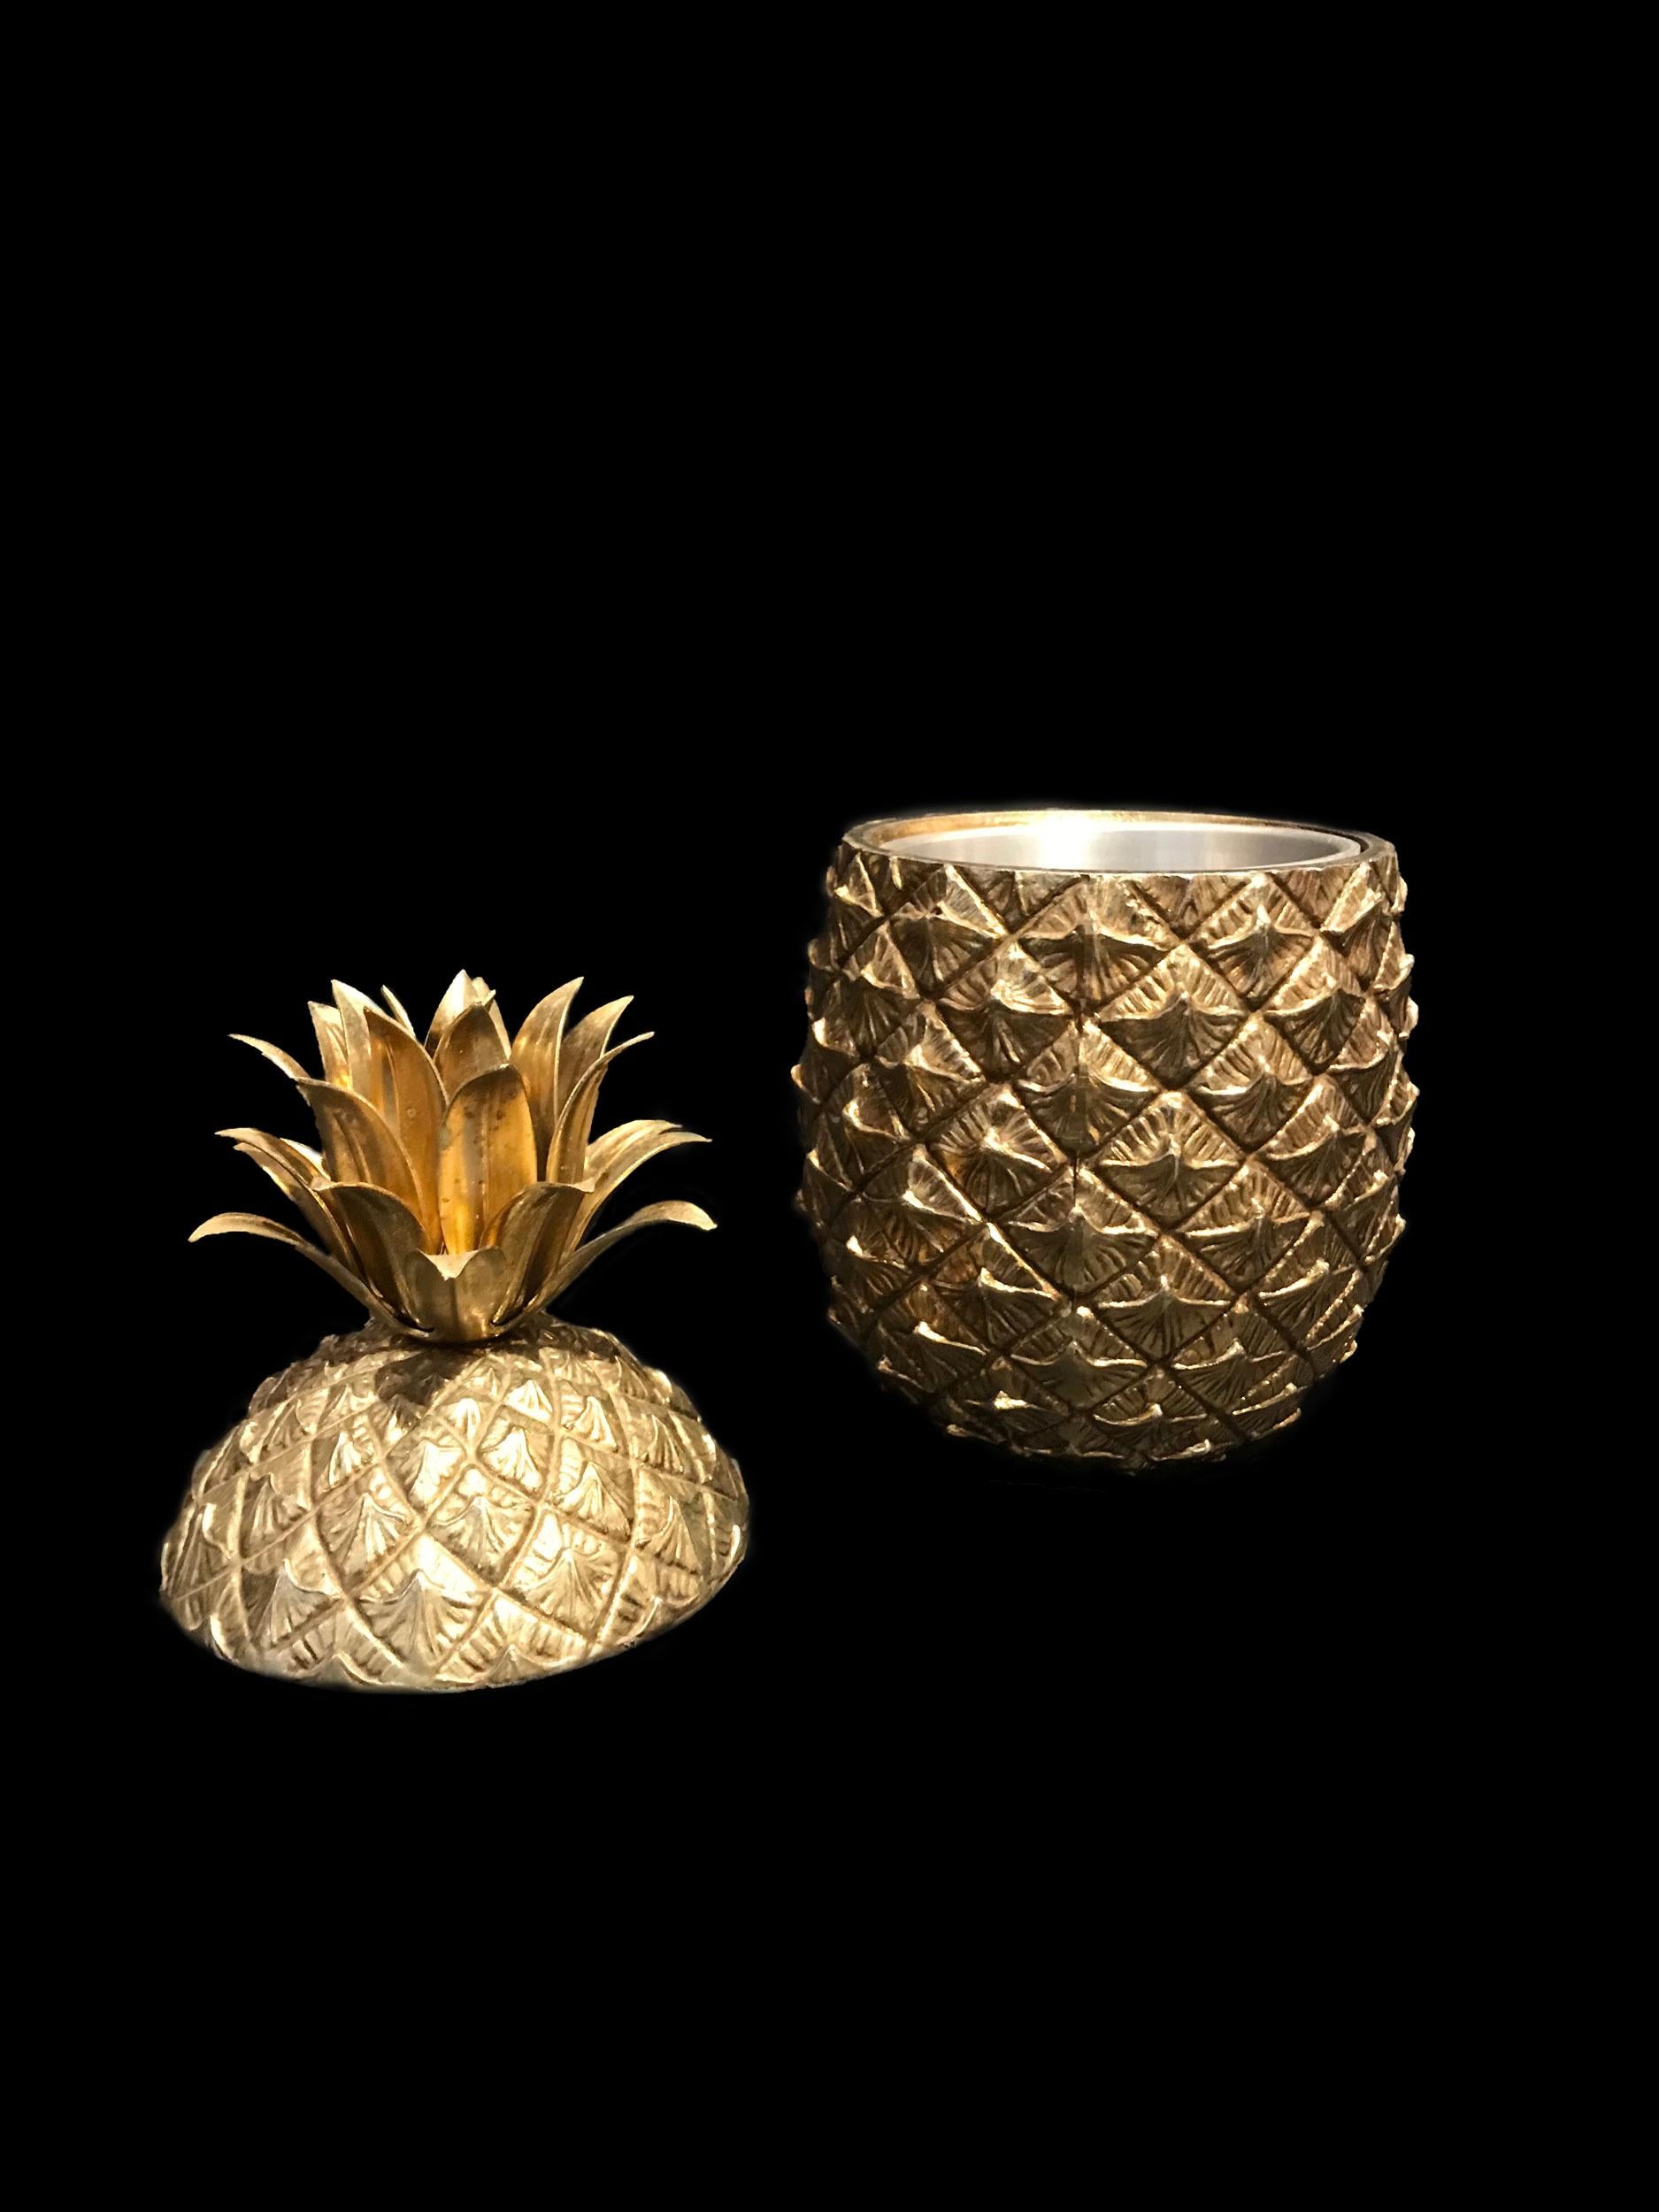 Le seau à glace en forme d'ananas:: conçu par Mauro Manetti:: est célèbre dans le monde entier et a même été copié de nombreuses fois !
L'original et les premières productions avaient un intérieur en métal. L'extérieur de celui-ci est en fonte